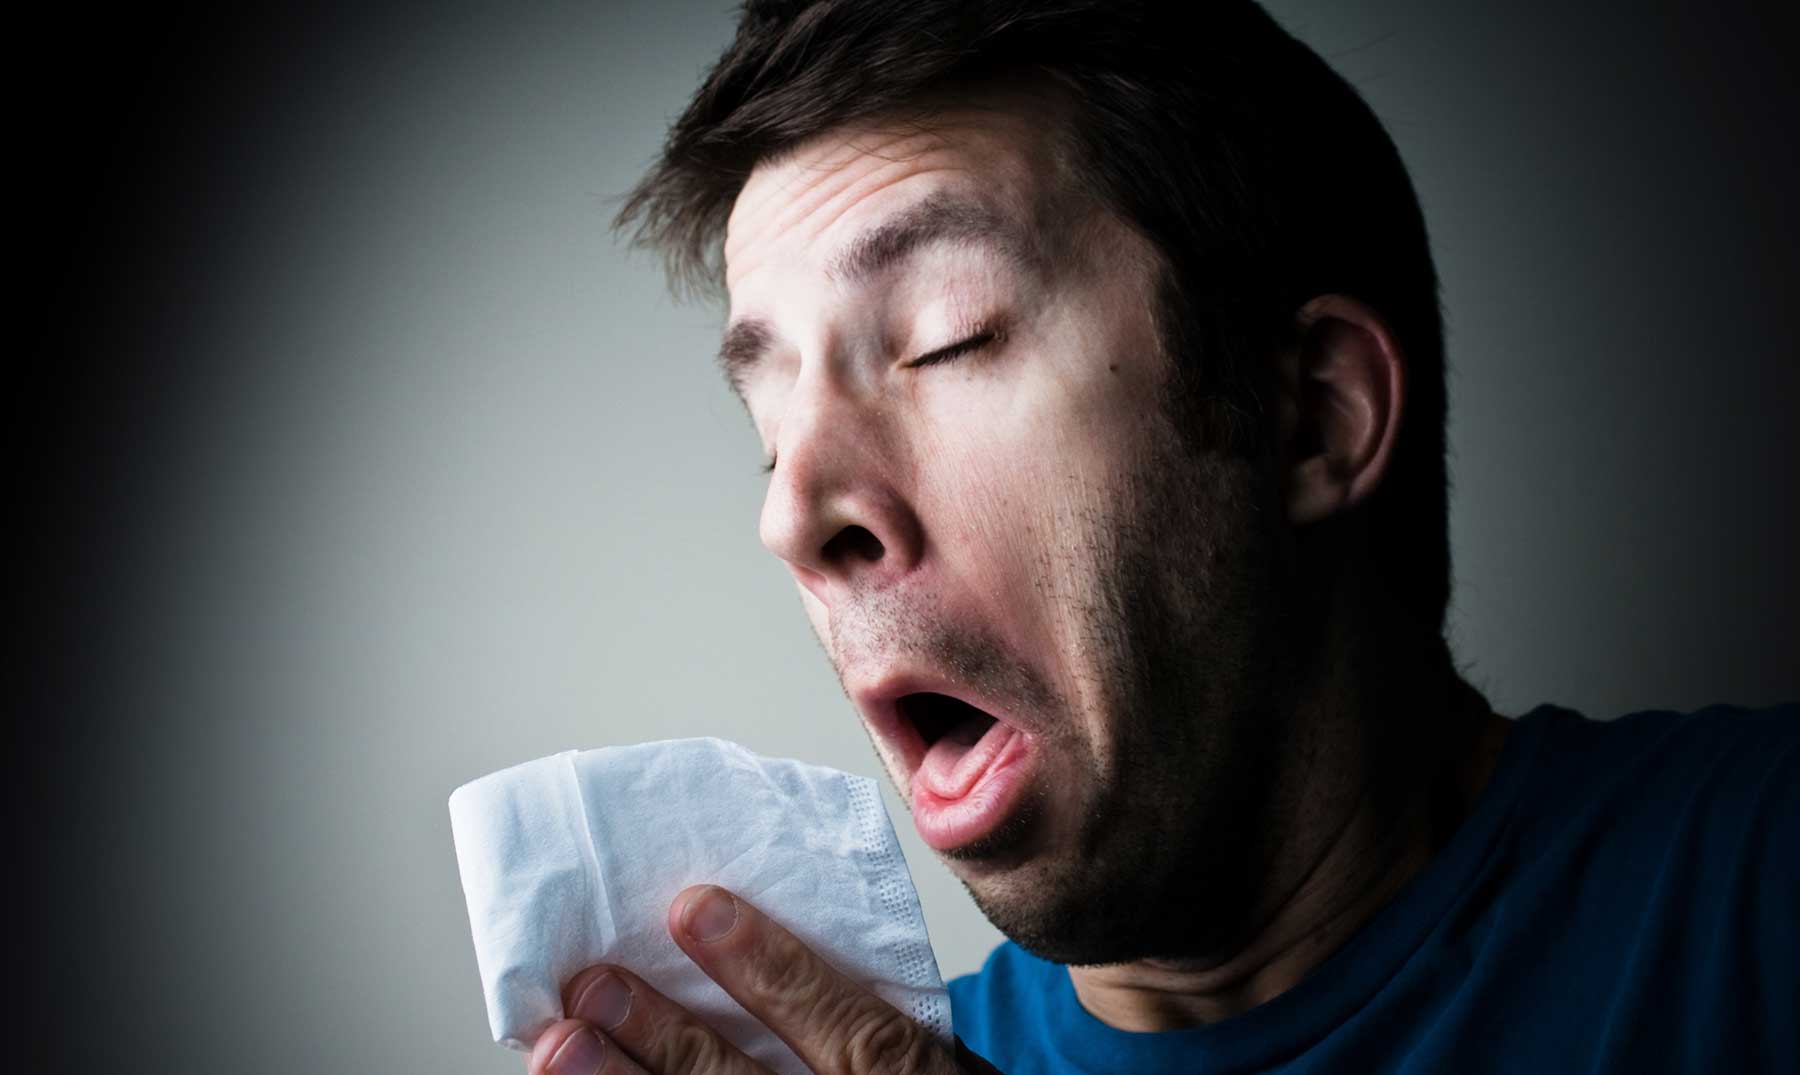 Resultado de imagen para estornudo